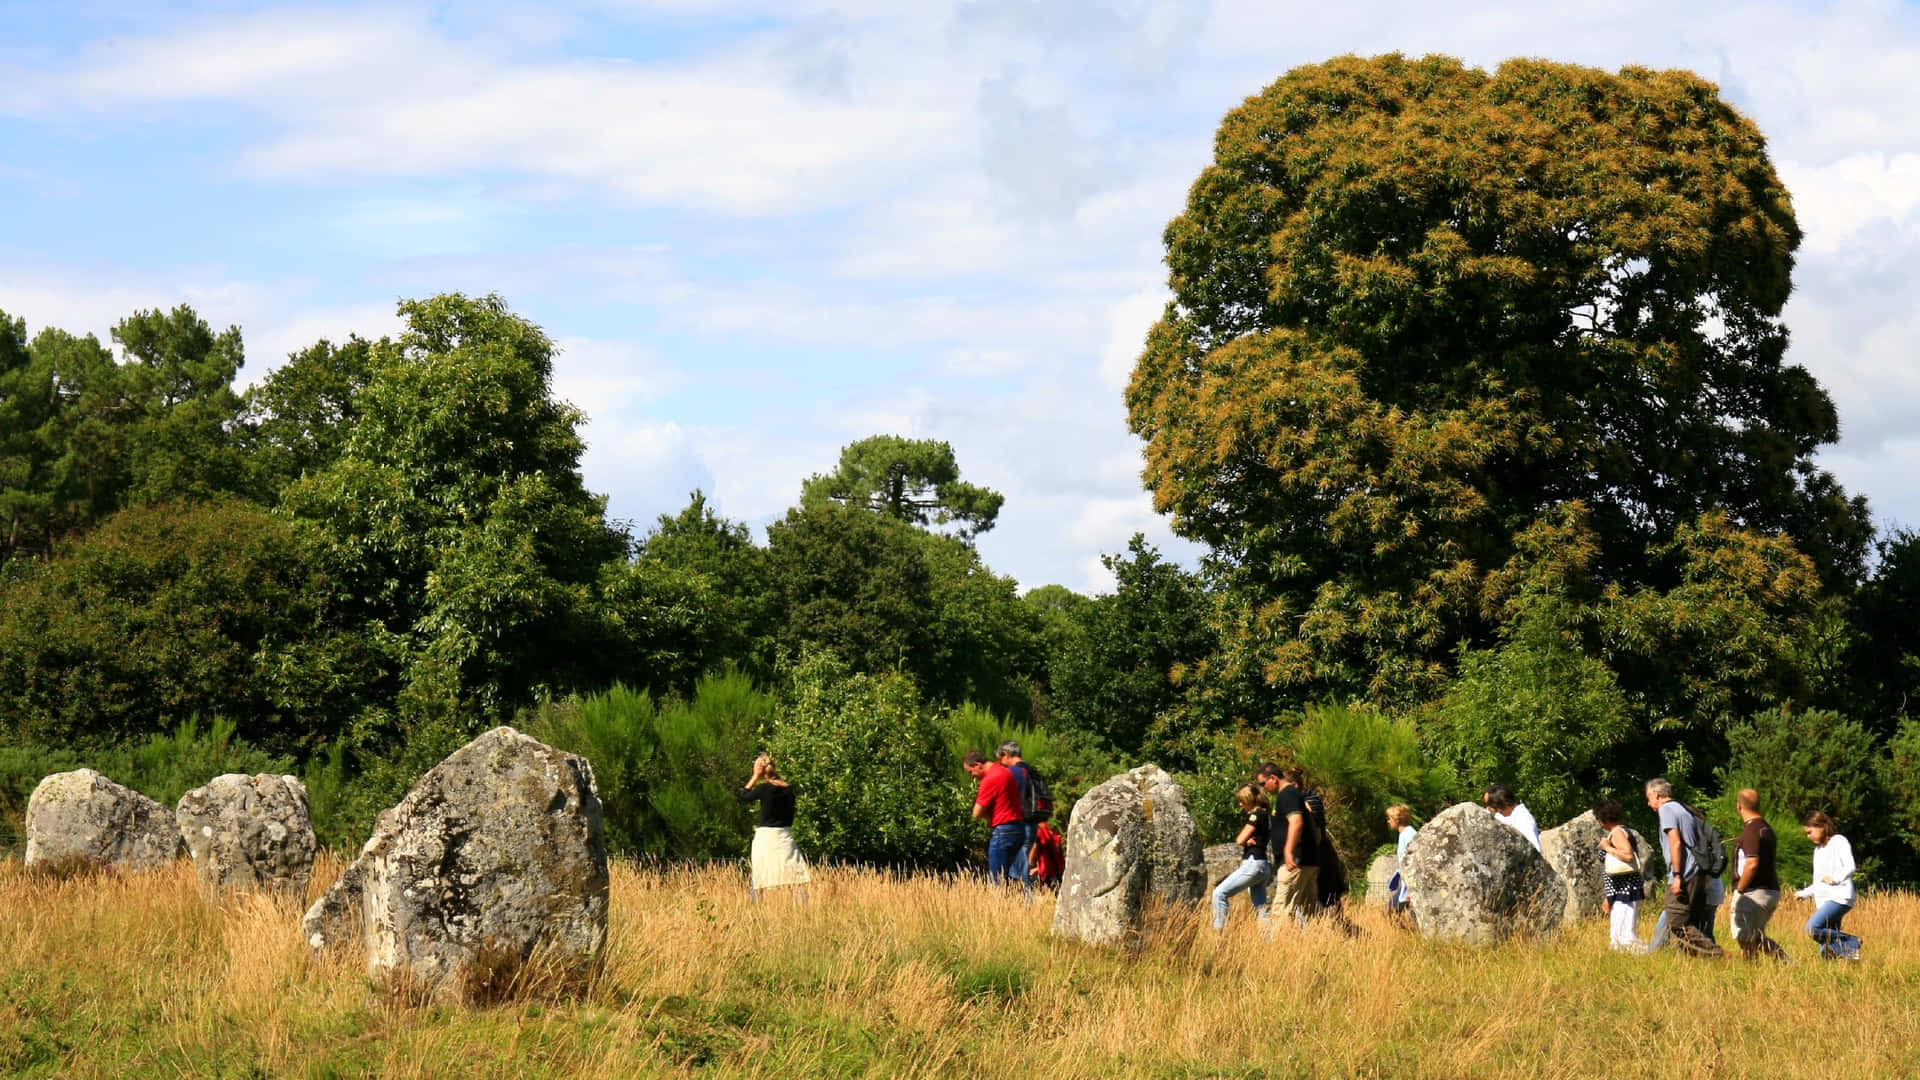 – Vis et bredt vinklet billede af Carnac-stenene besøgt af turister. Wallpaper